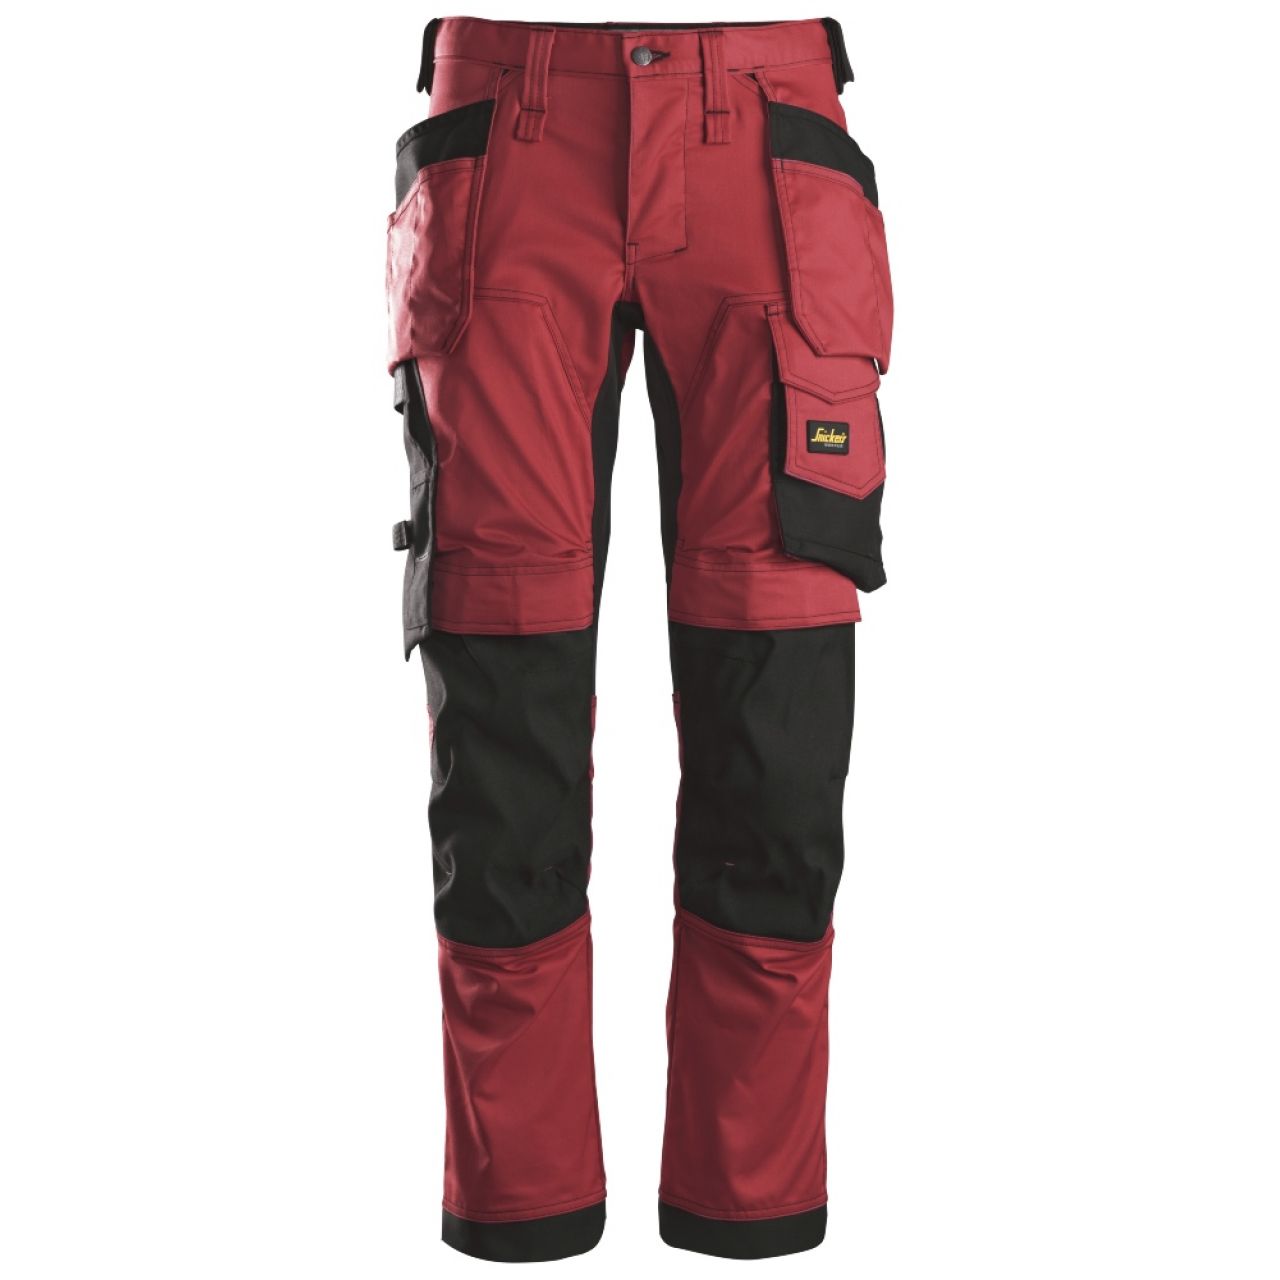 6241 Pantalones largos de trabajo elásticos con bolsillos flotantes AllroundWork rojo-negro talla 46